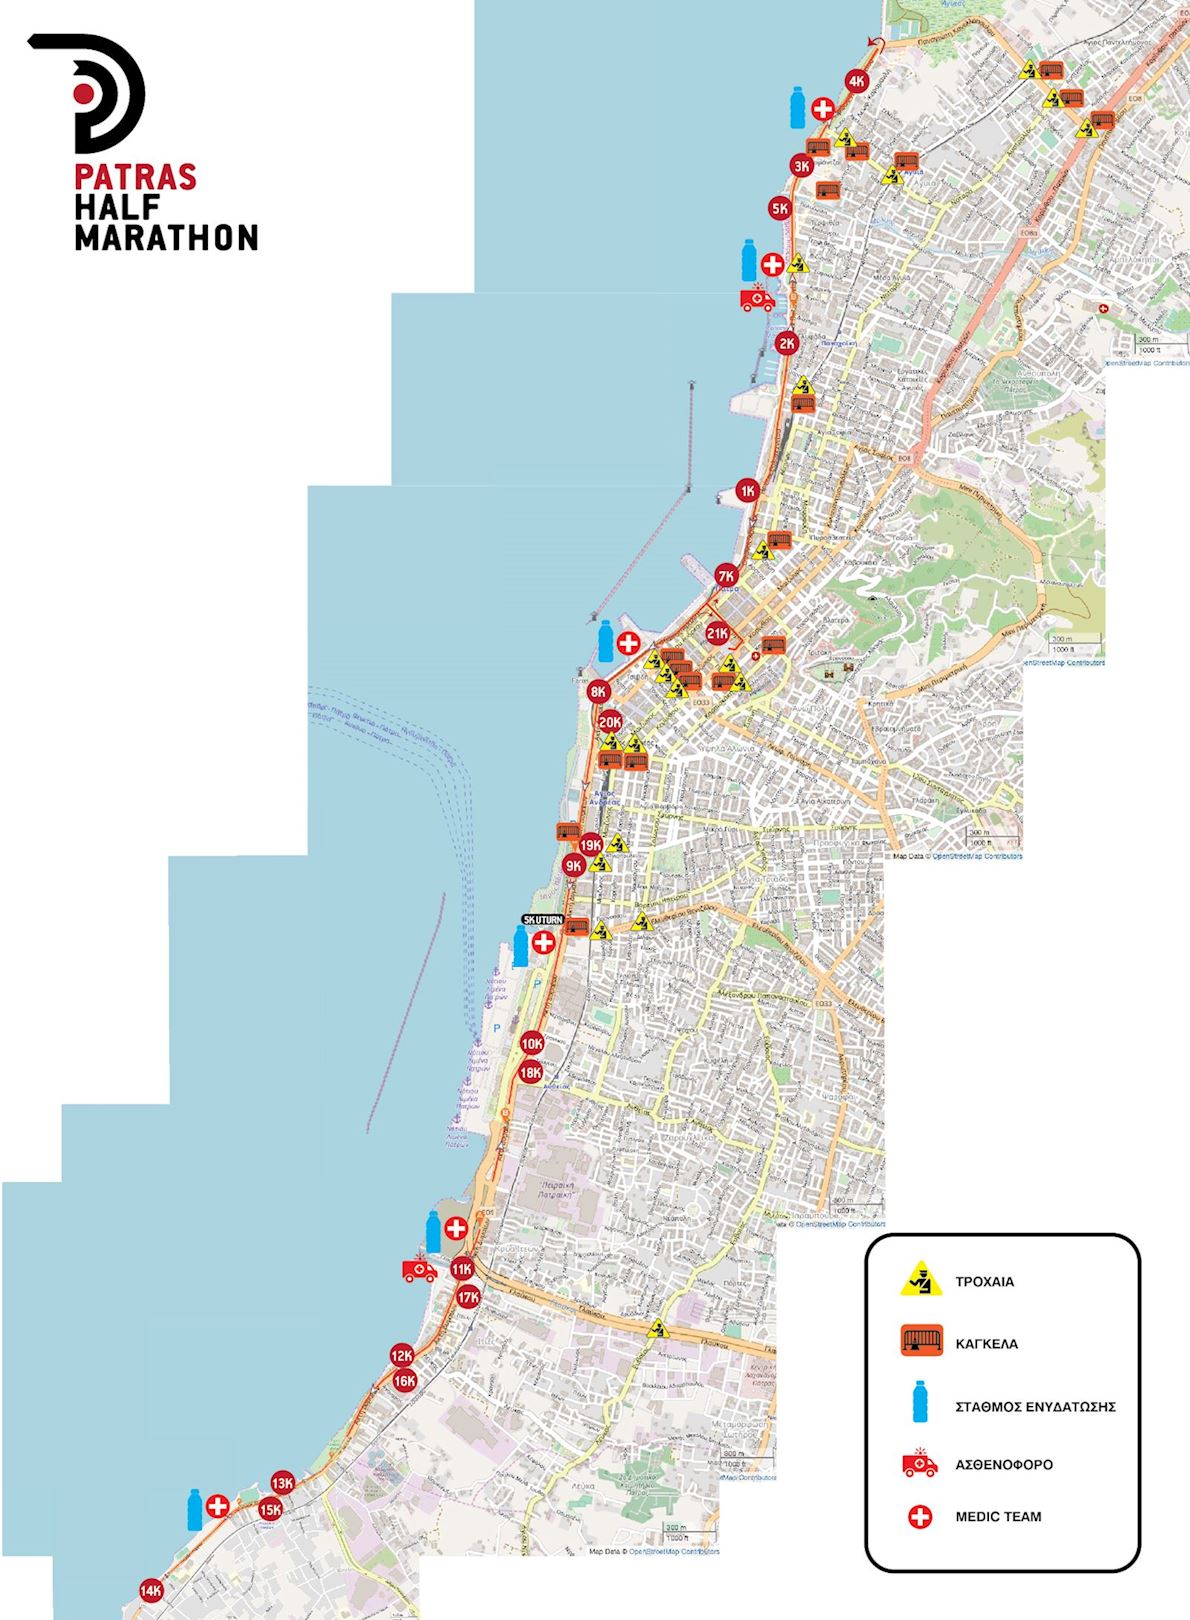 Patras Half Marathon MAPA DEL RECORRIDO DE